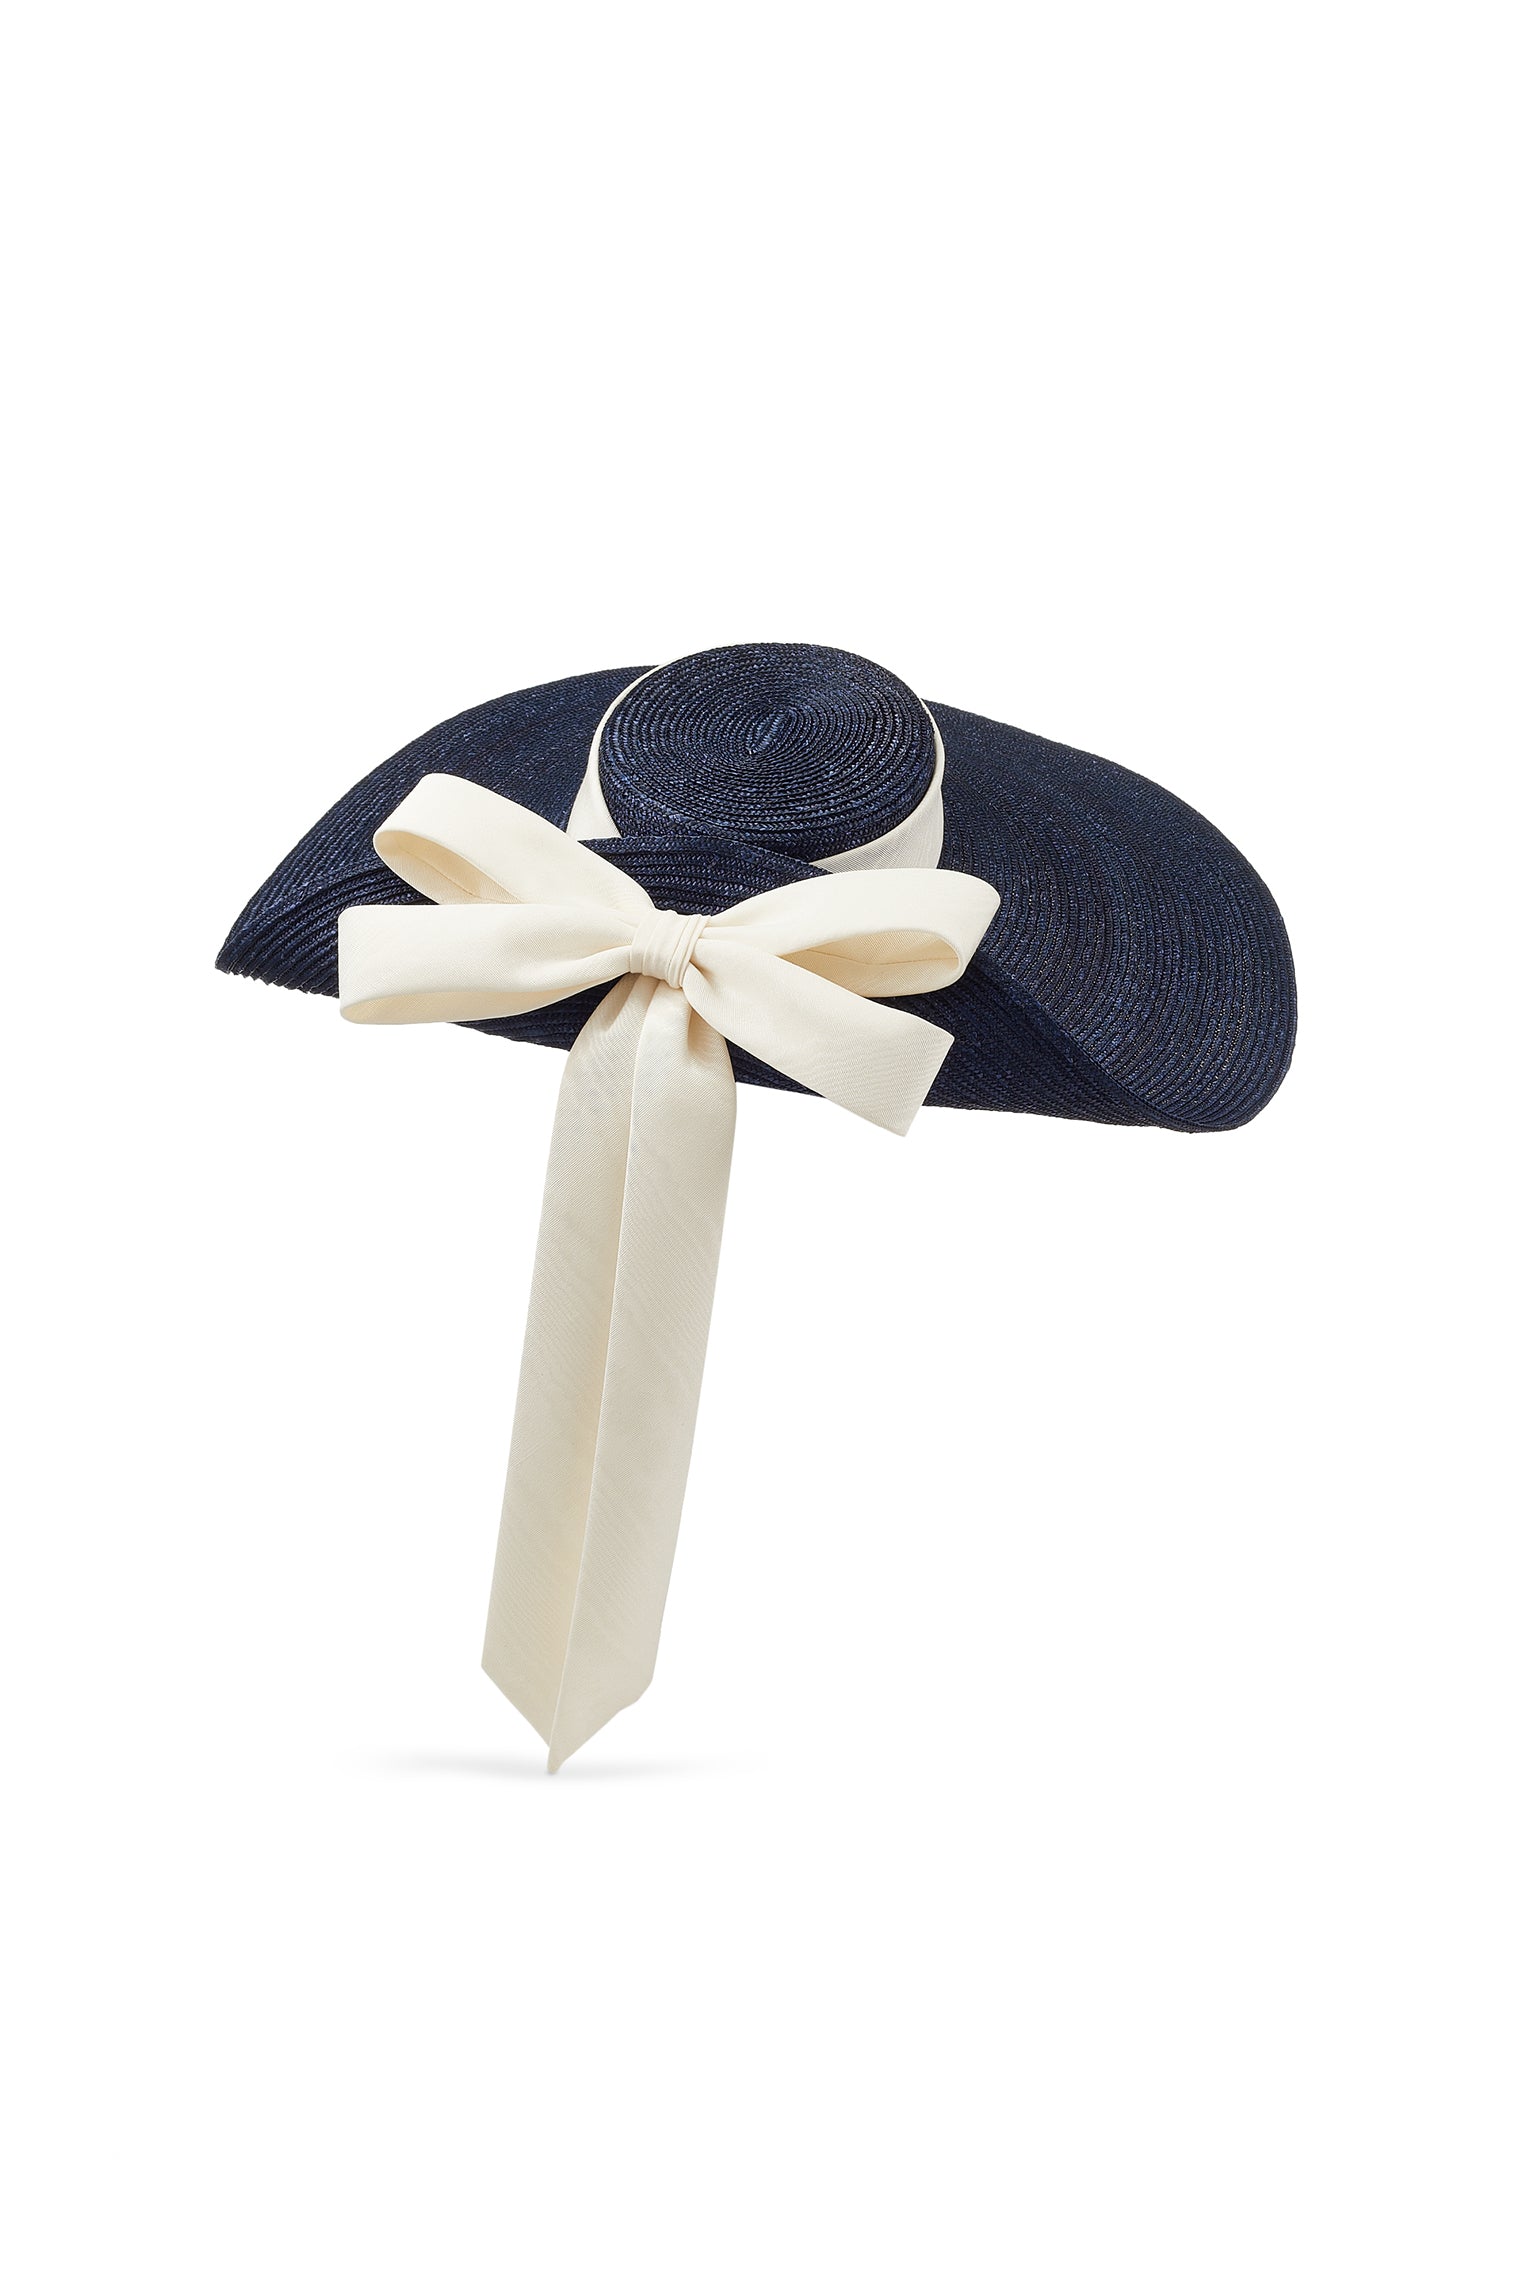 Lady Grey Navy Wide Brim Hat - Women’s Hats - Lock & Co. Hatters London UK